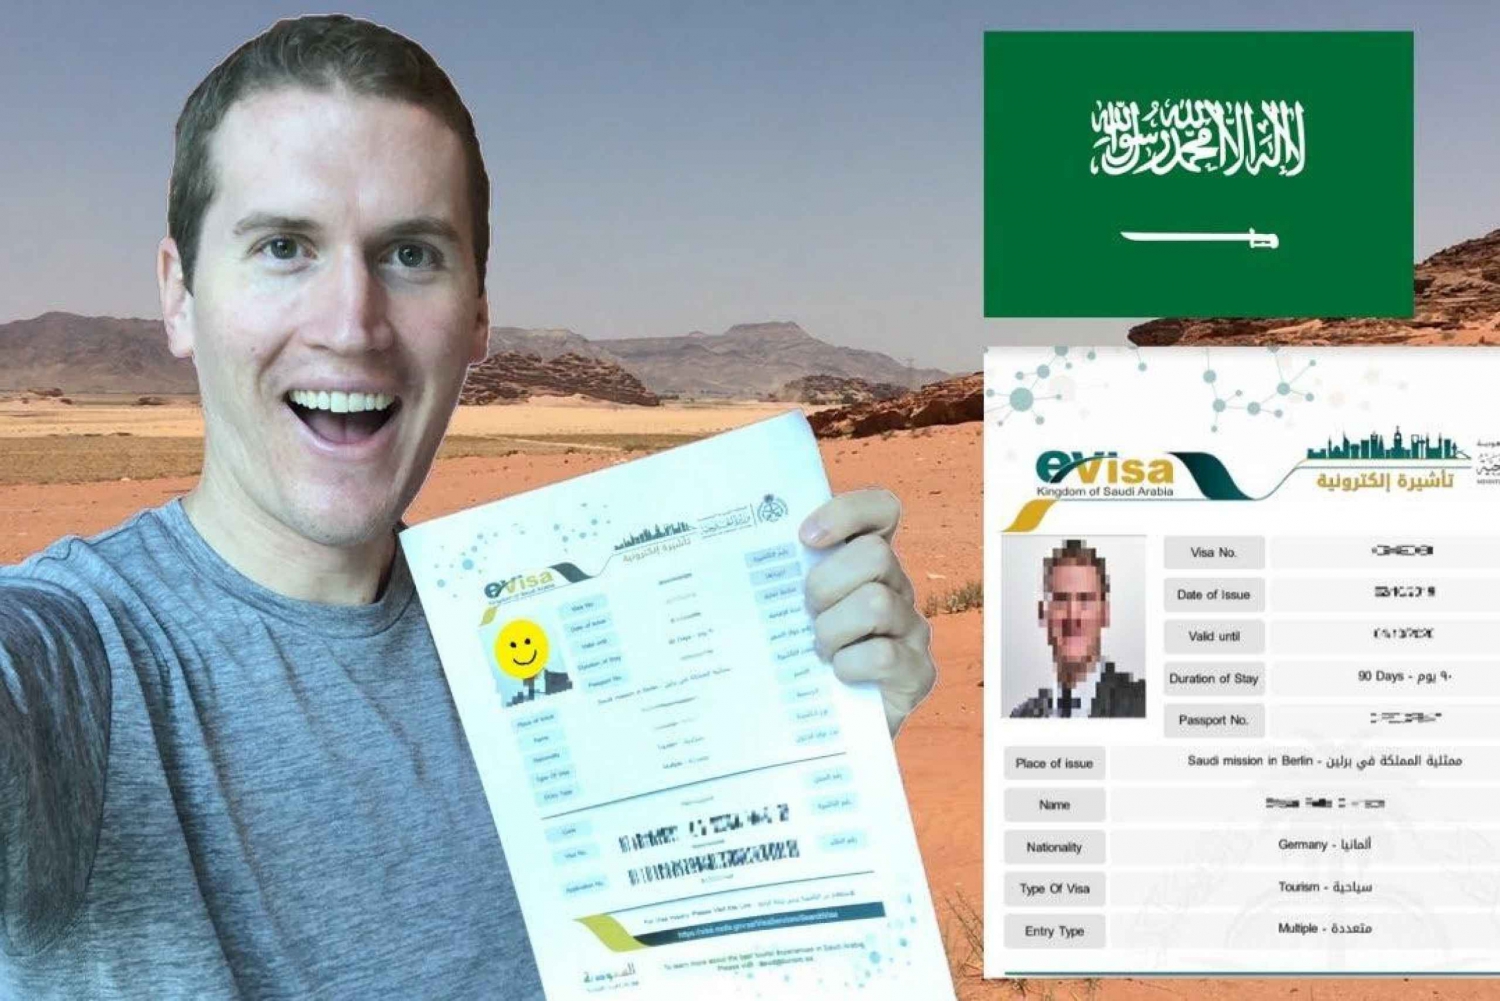 Saudiarabien: E-visum till Saudiarabien - Hoppa över linjen